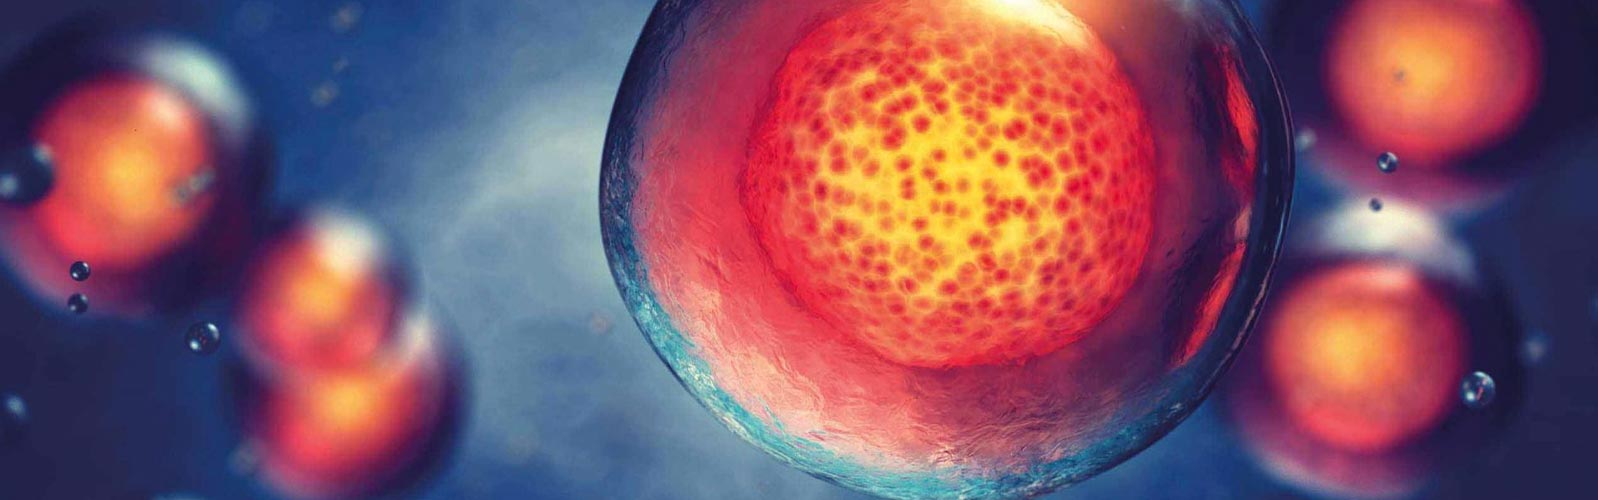 anova institute for regenerative medicine - secretome exosomes therapy